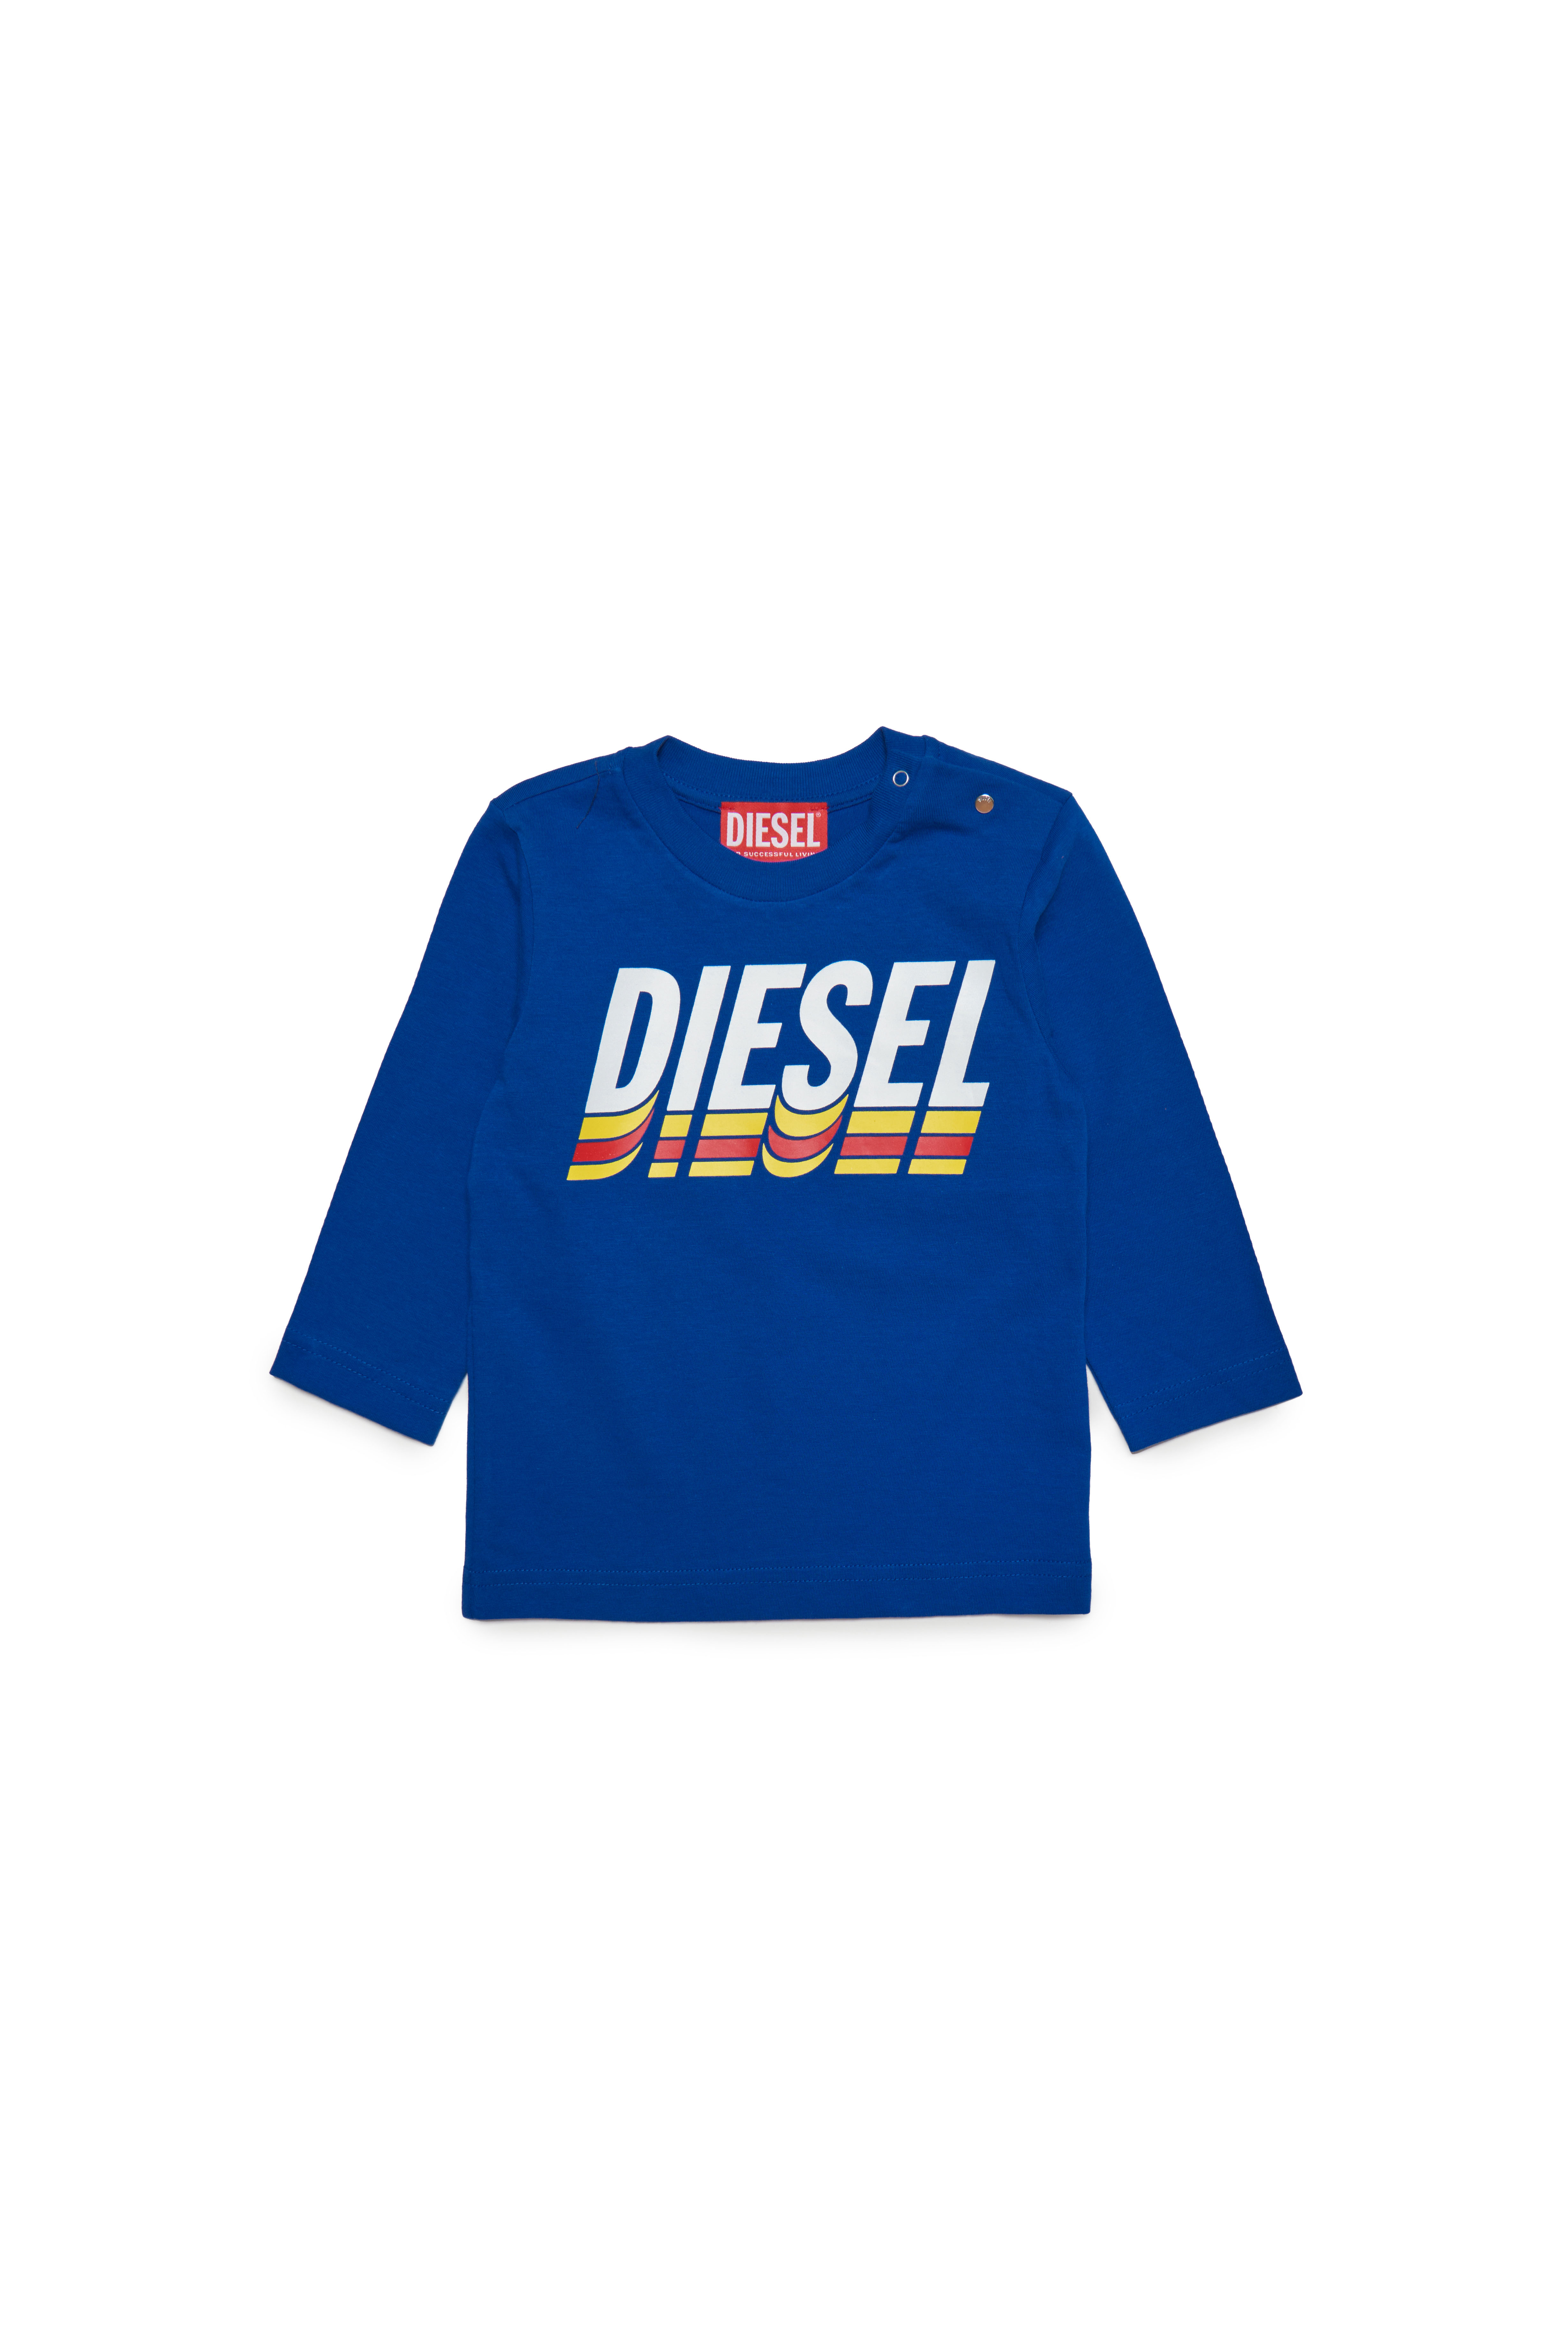 Diesel - TVASELSB, Blu - Image 1